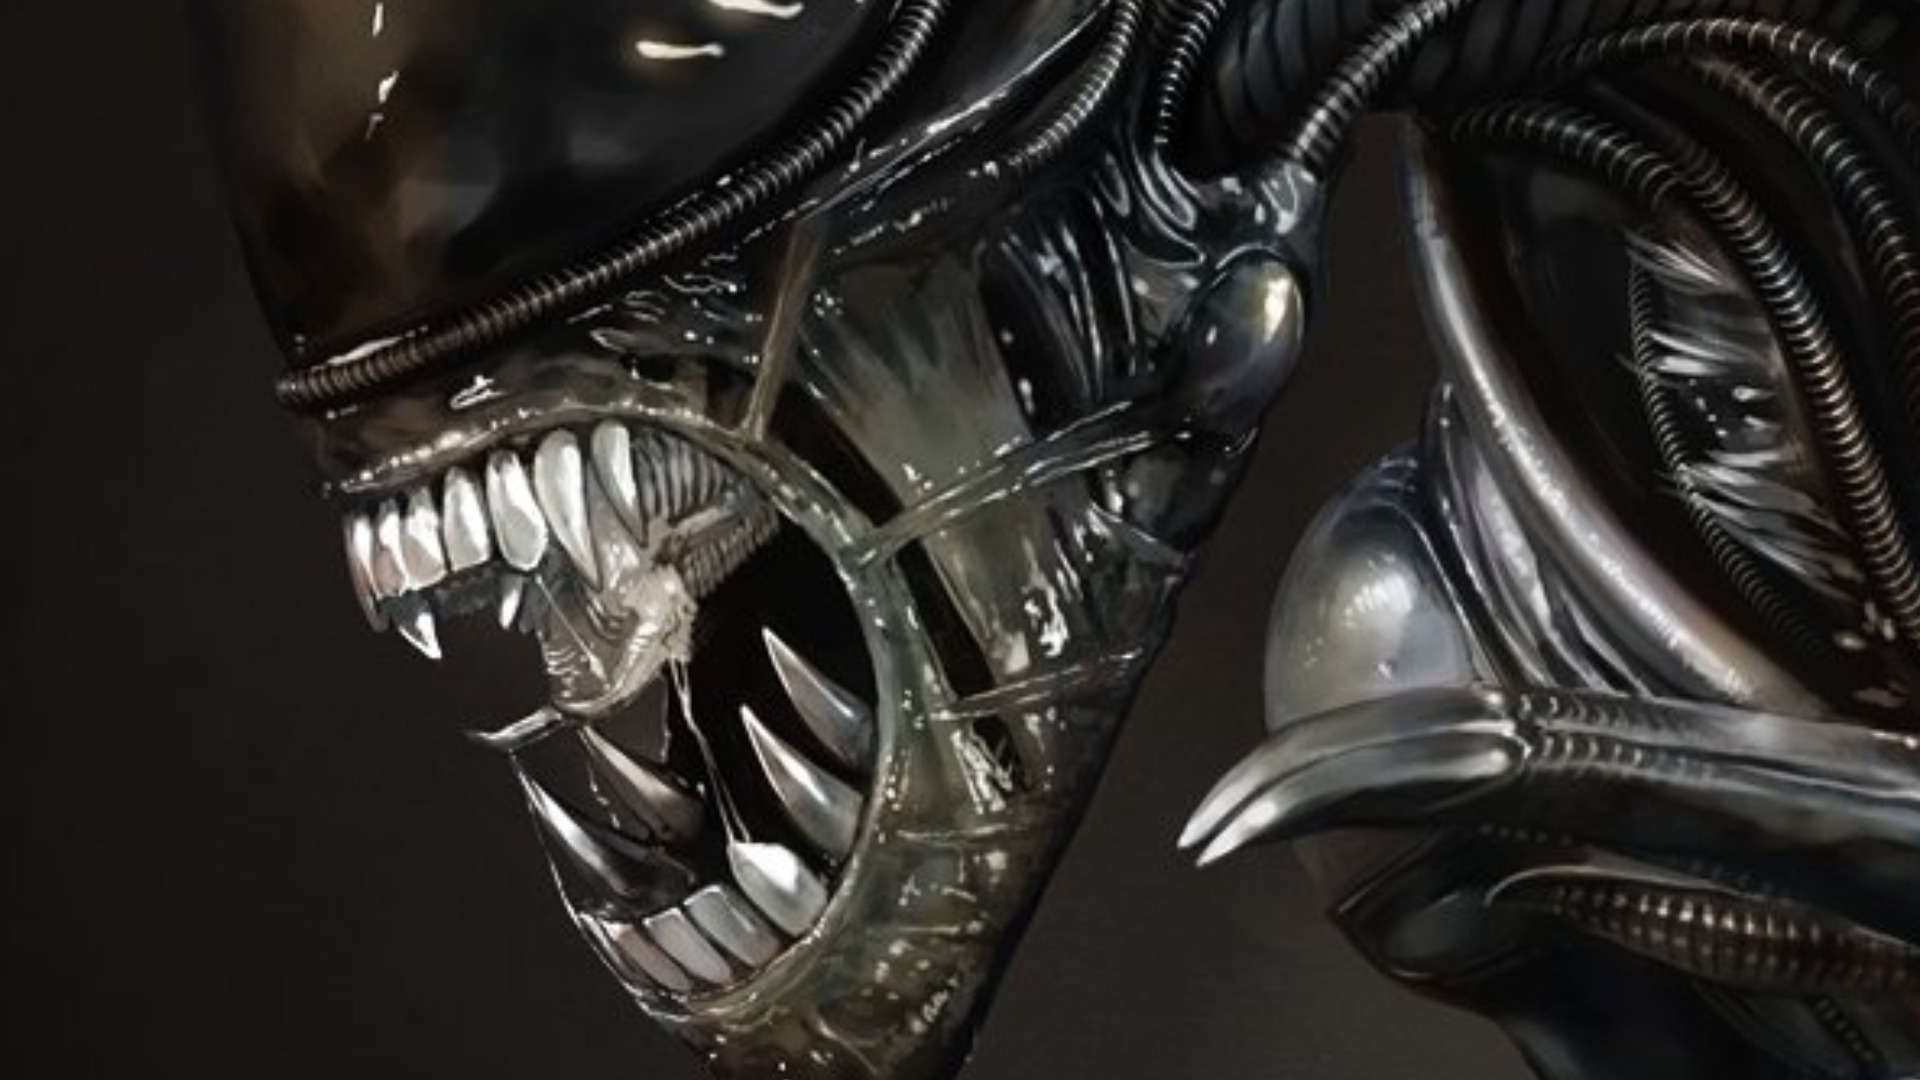 Скачать обои бесплатно Инопланетянин, Научная Фантастика картинка на рабочий стол ПК